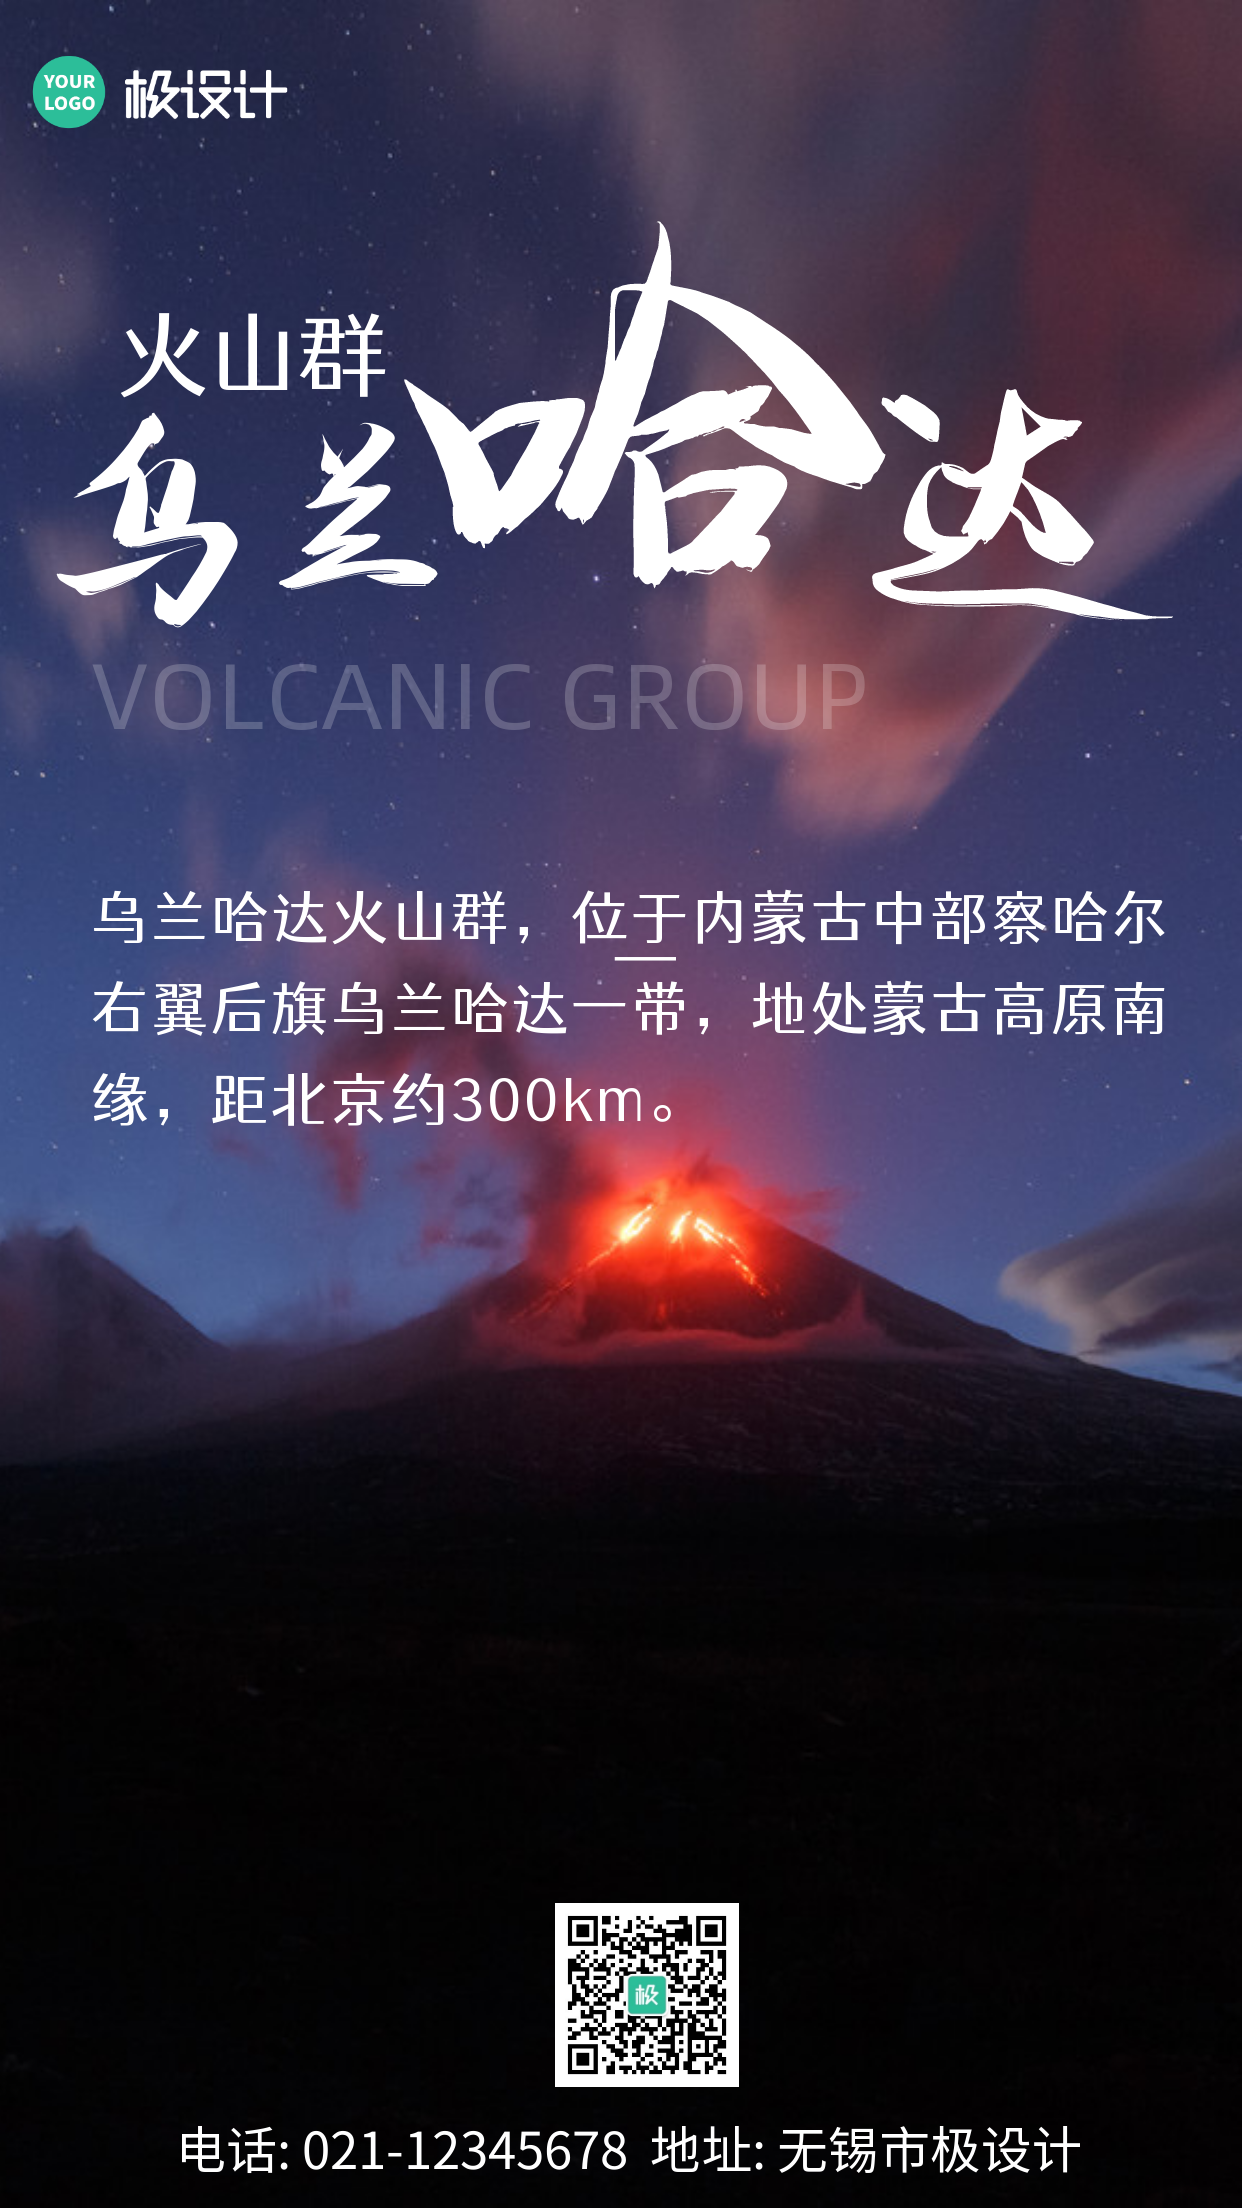 乌兰哈达火山群黑色简约大气宣传手机海报